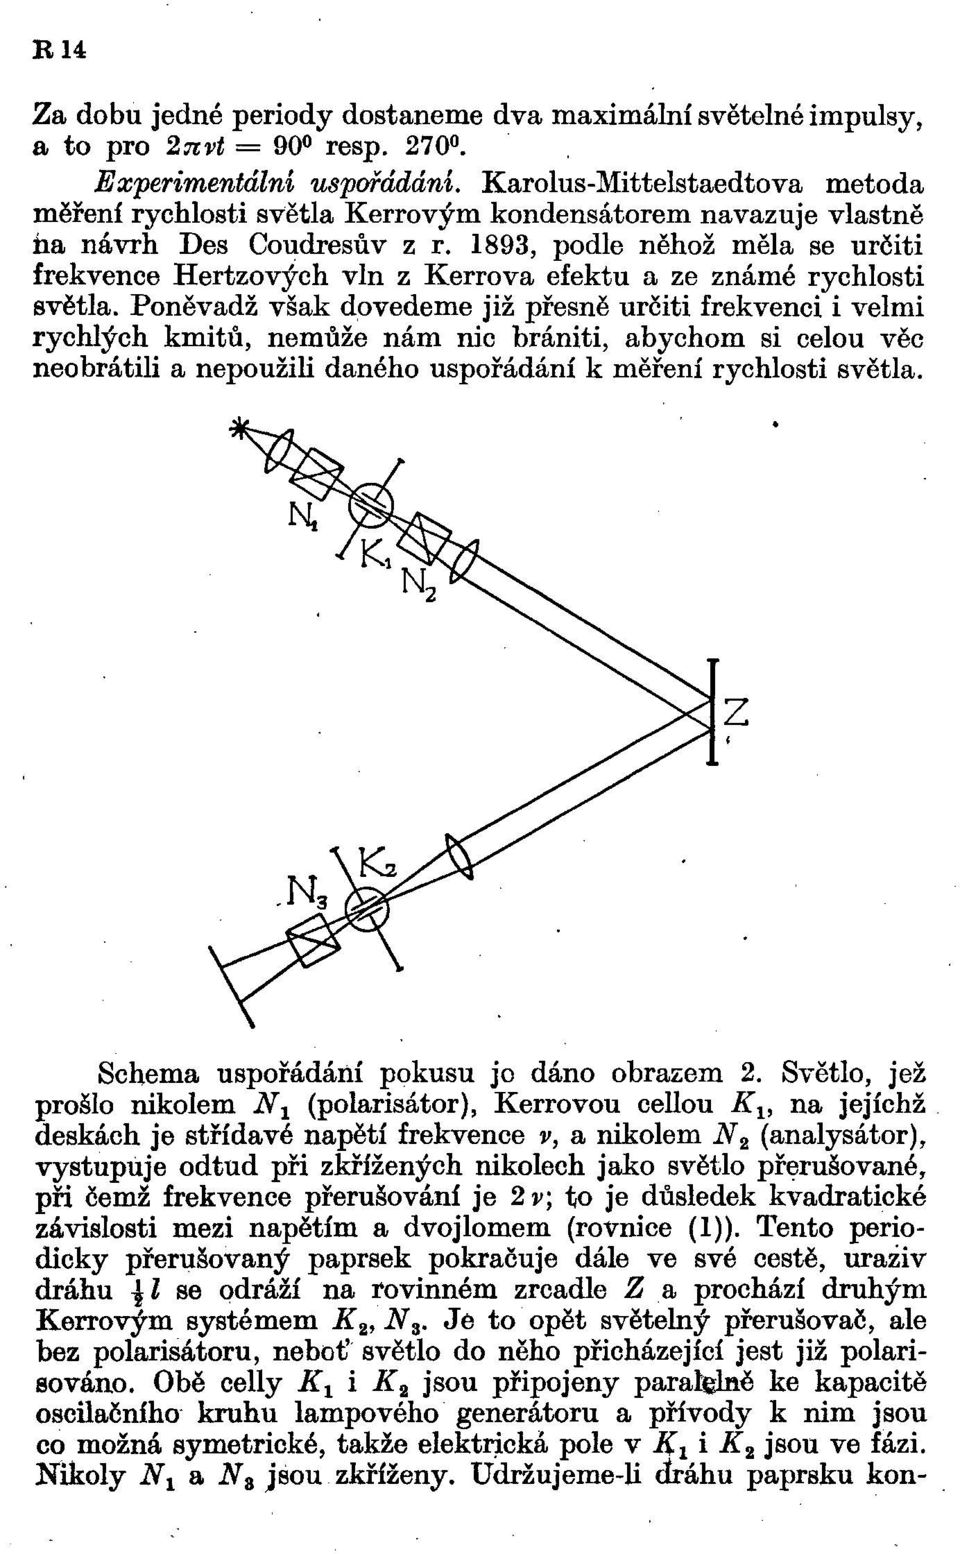 1893, podle něhož měla se určiti frekvence Hertzových vln z Kerrova efektu a ze známé rychlosti světla.